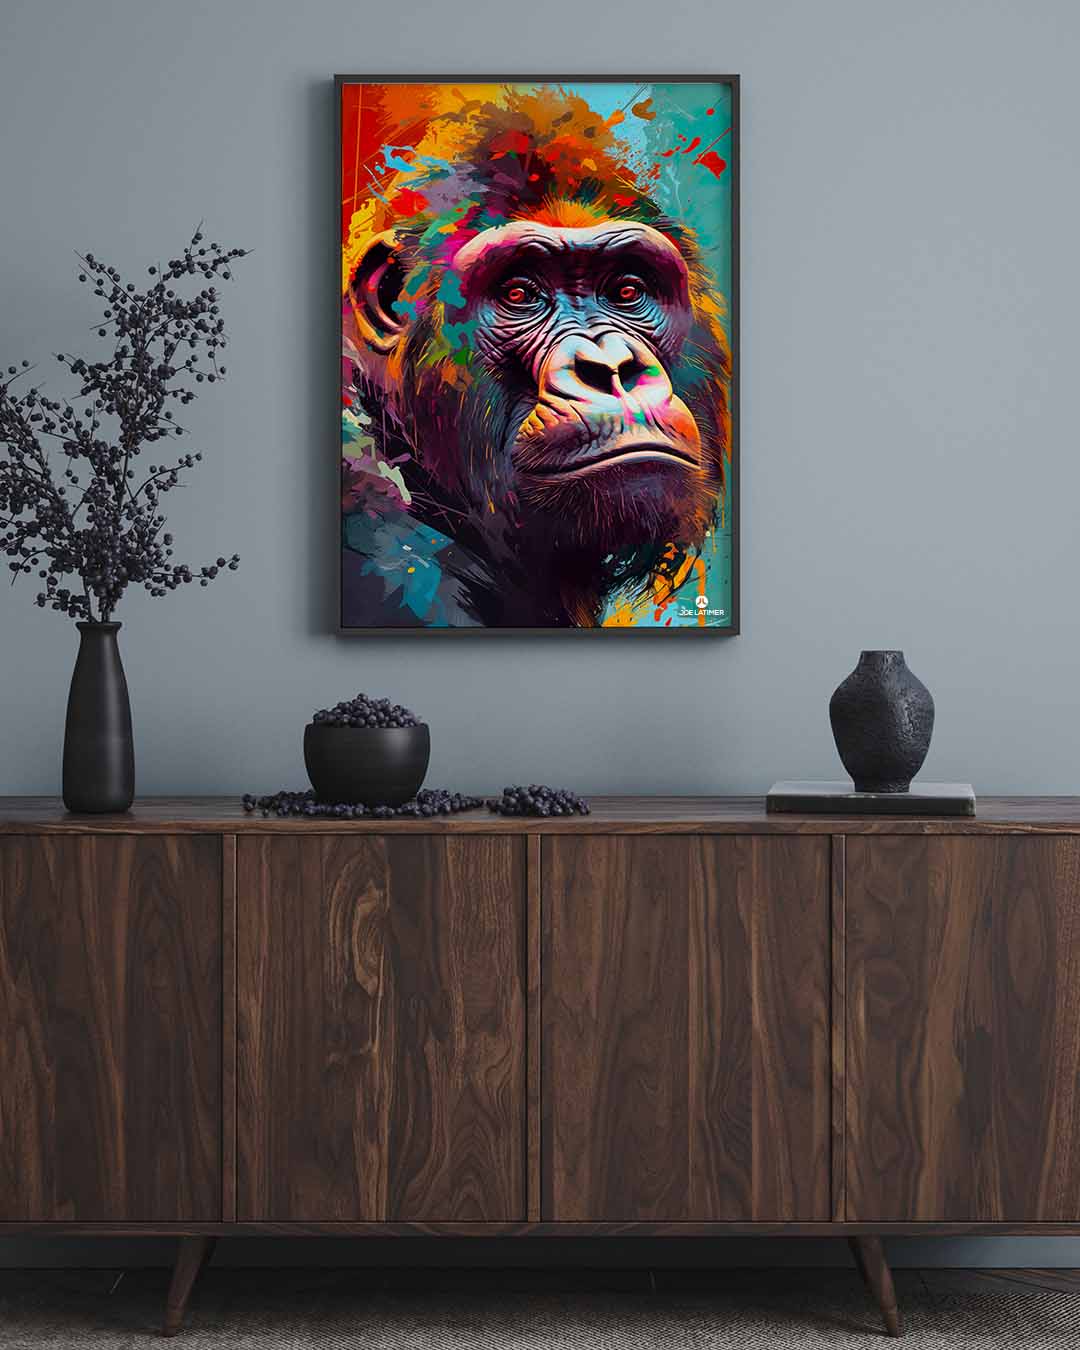 | - Joe Artist Park, FL Latimer Creative Winter Media Gorilla Poster | Digital A